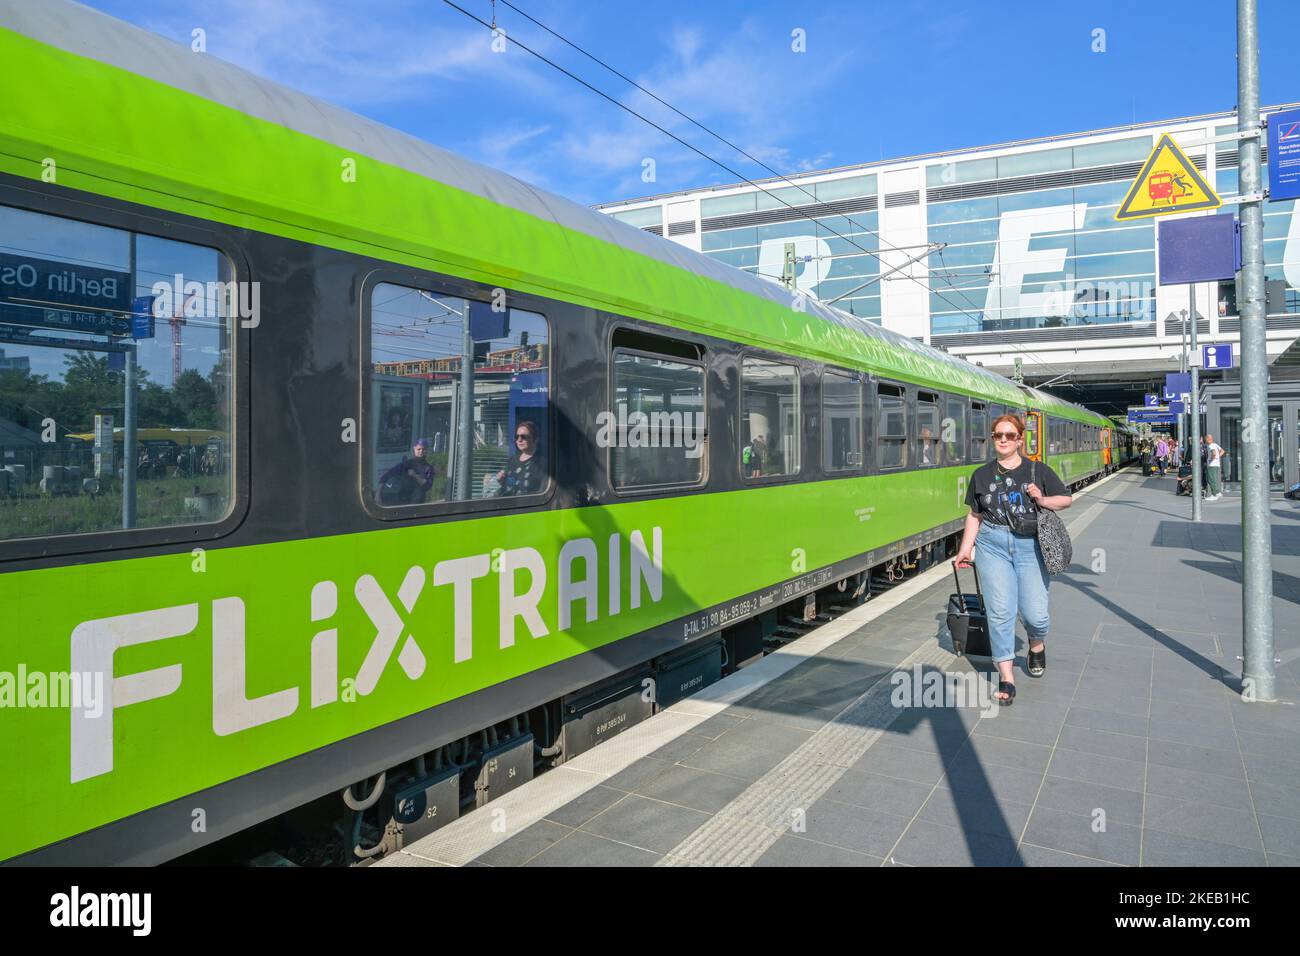 Flixtrain, Bahnhof Ostkreuz, Friedrichshain, Berlin, Deutschland Stock Photo